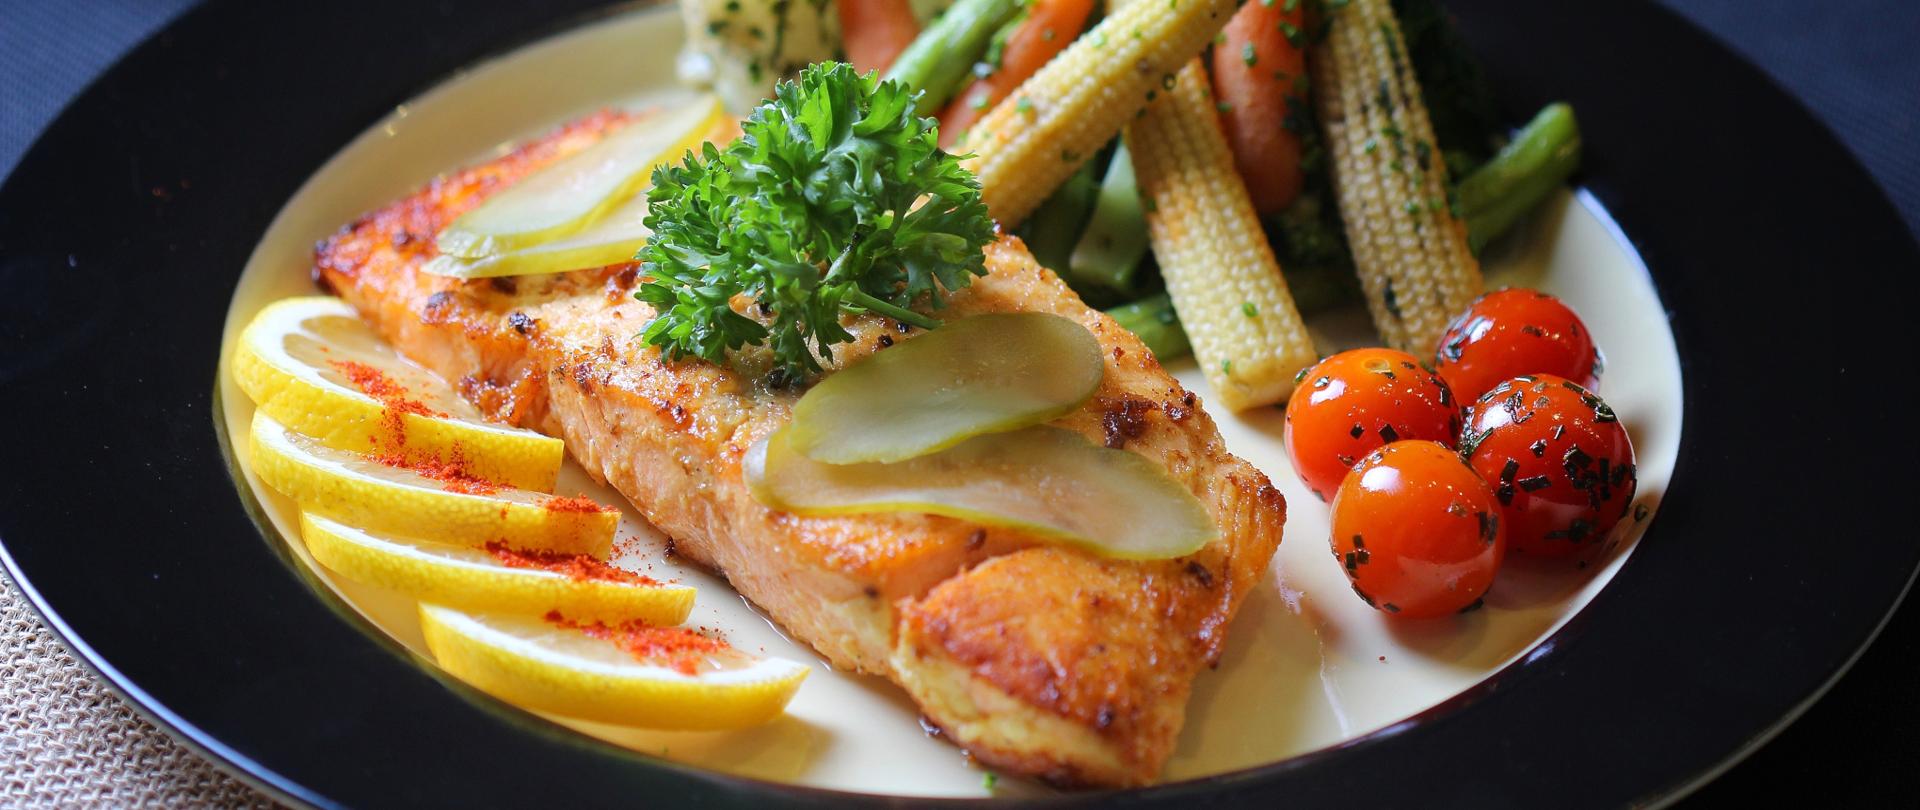 Upieczony filet z ryby ułożony na talerzy razem z warzywami.